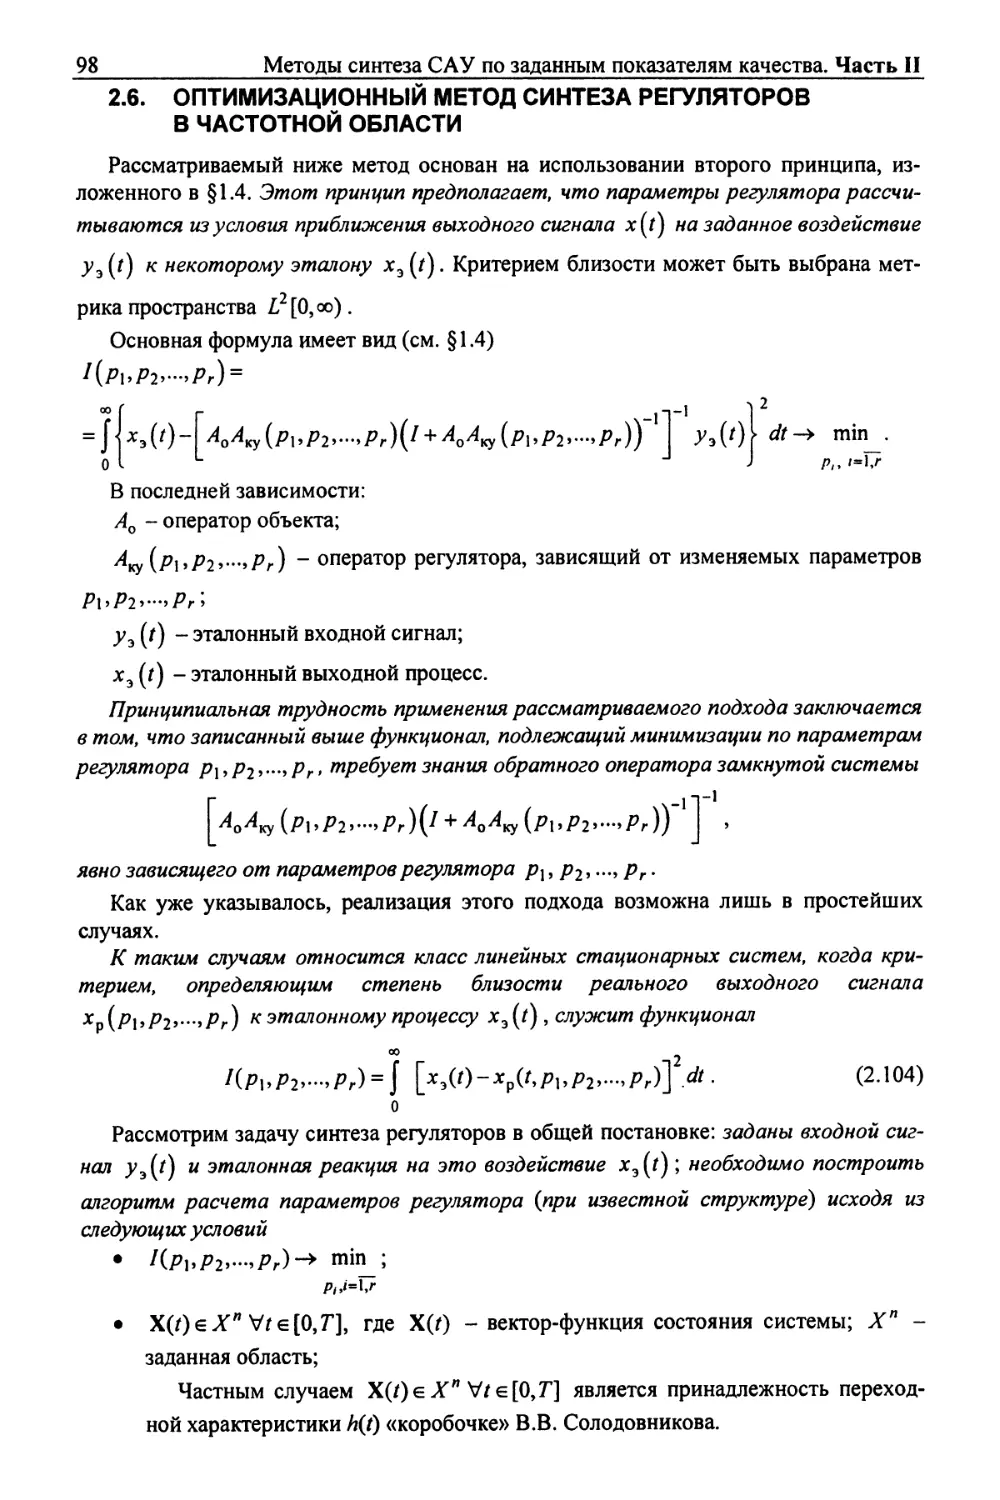 2.6. Оптимизационный метод синтеза регуляторов в частотной области